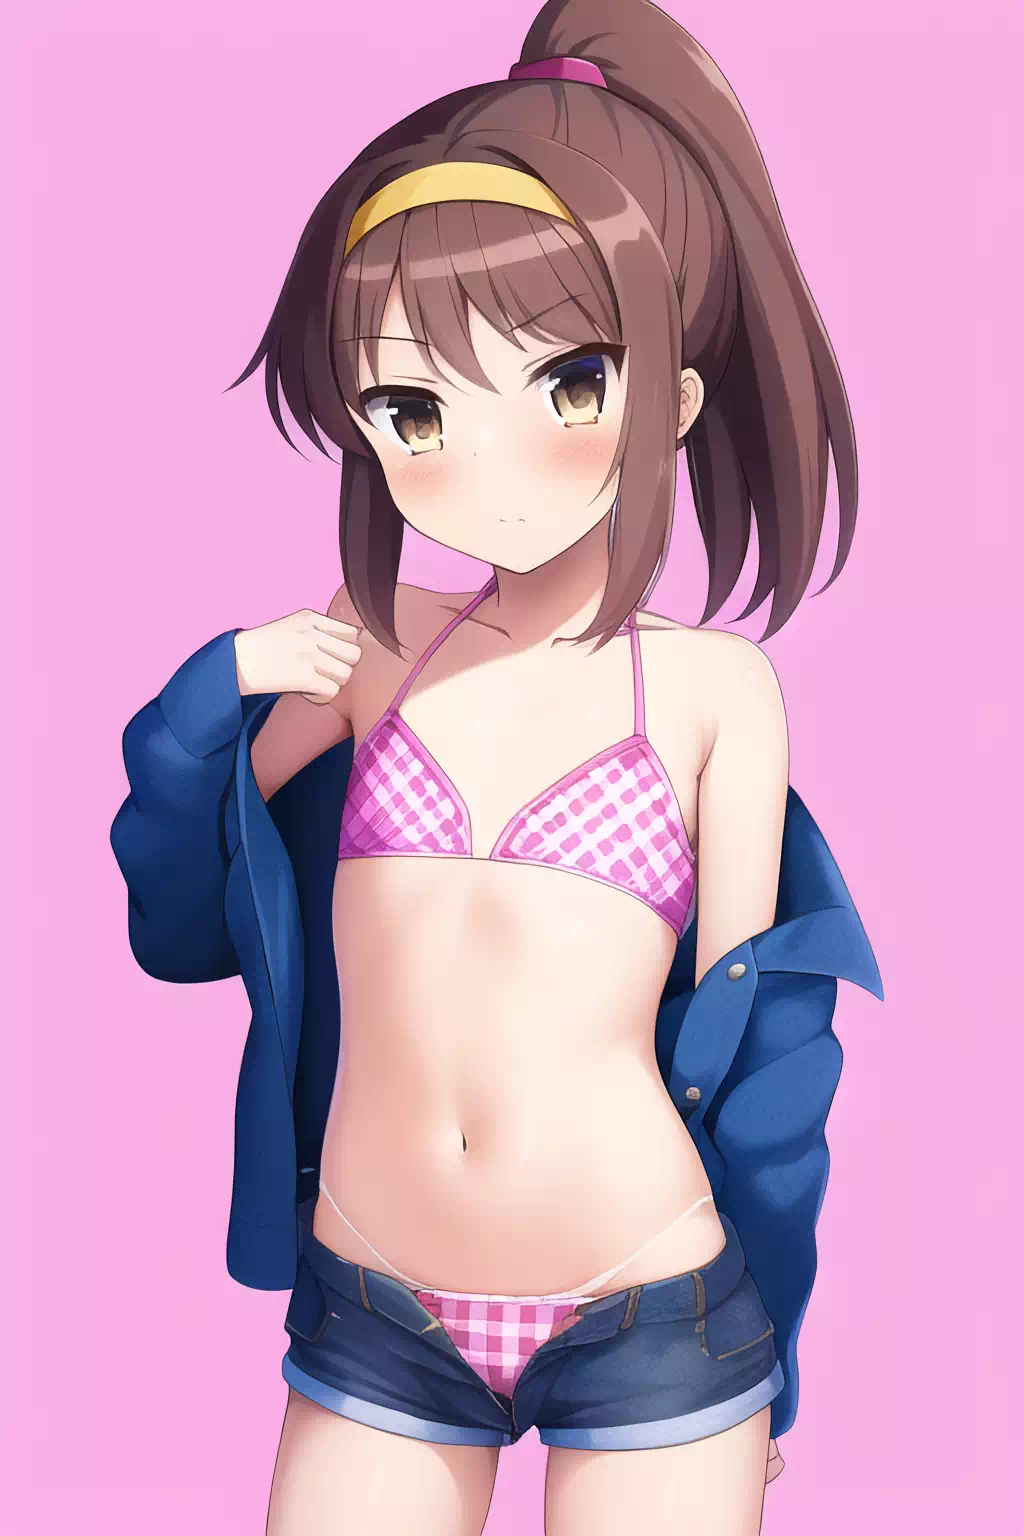 Kyonko in bikini short shorts